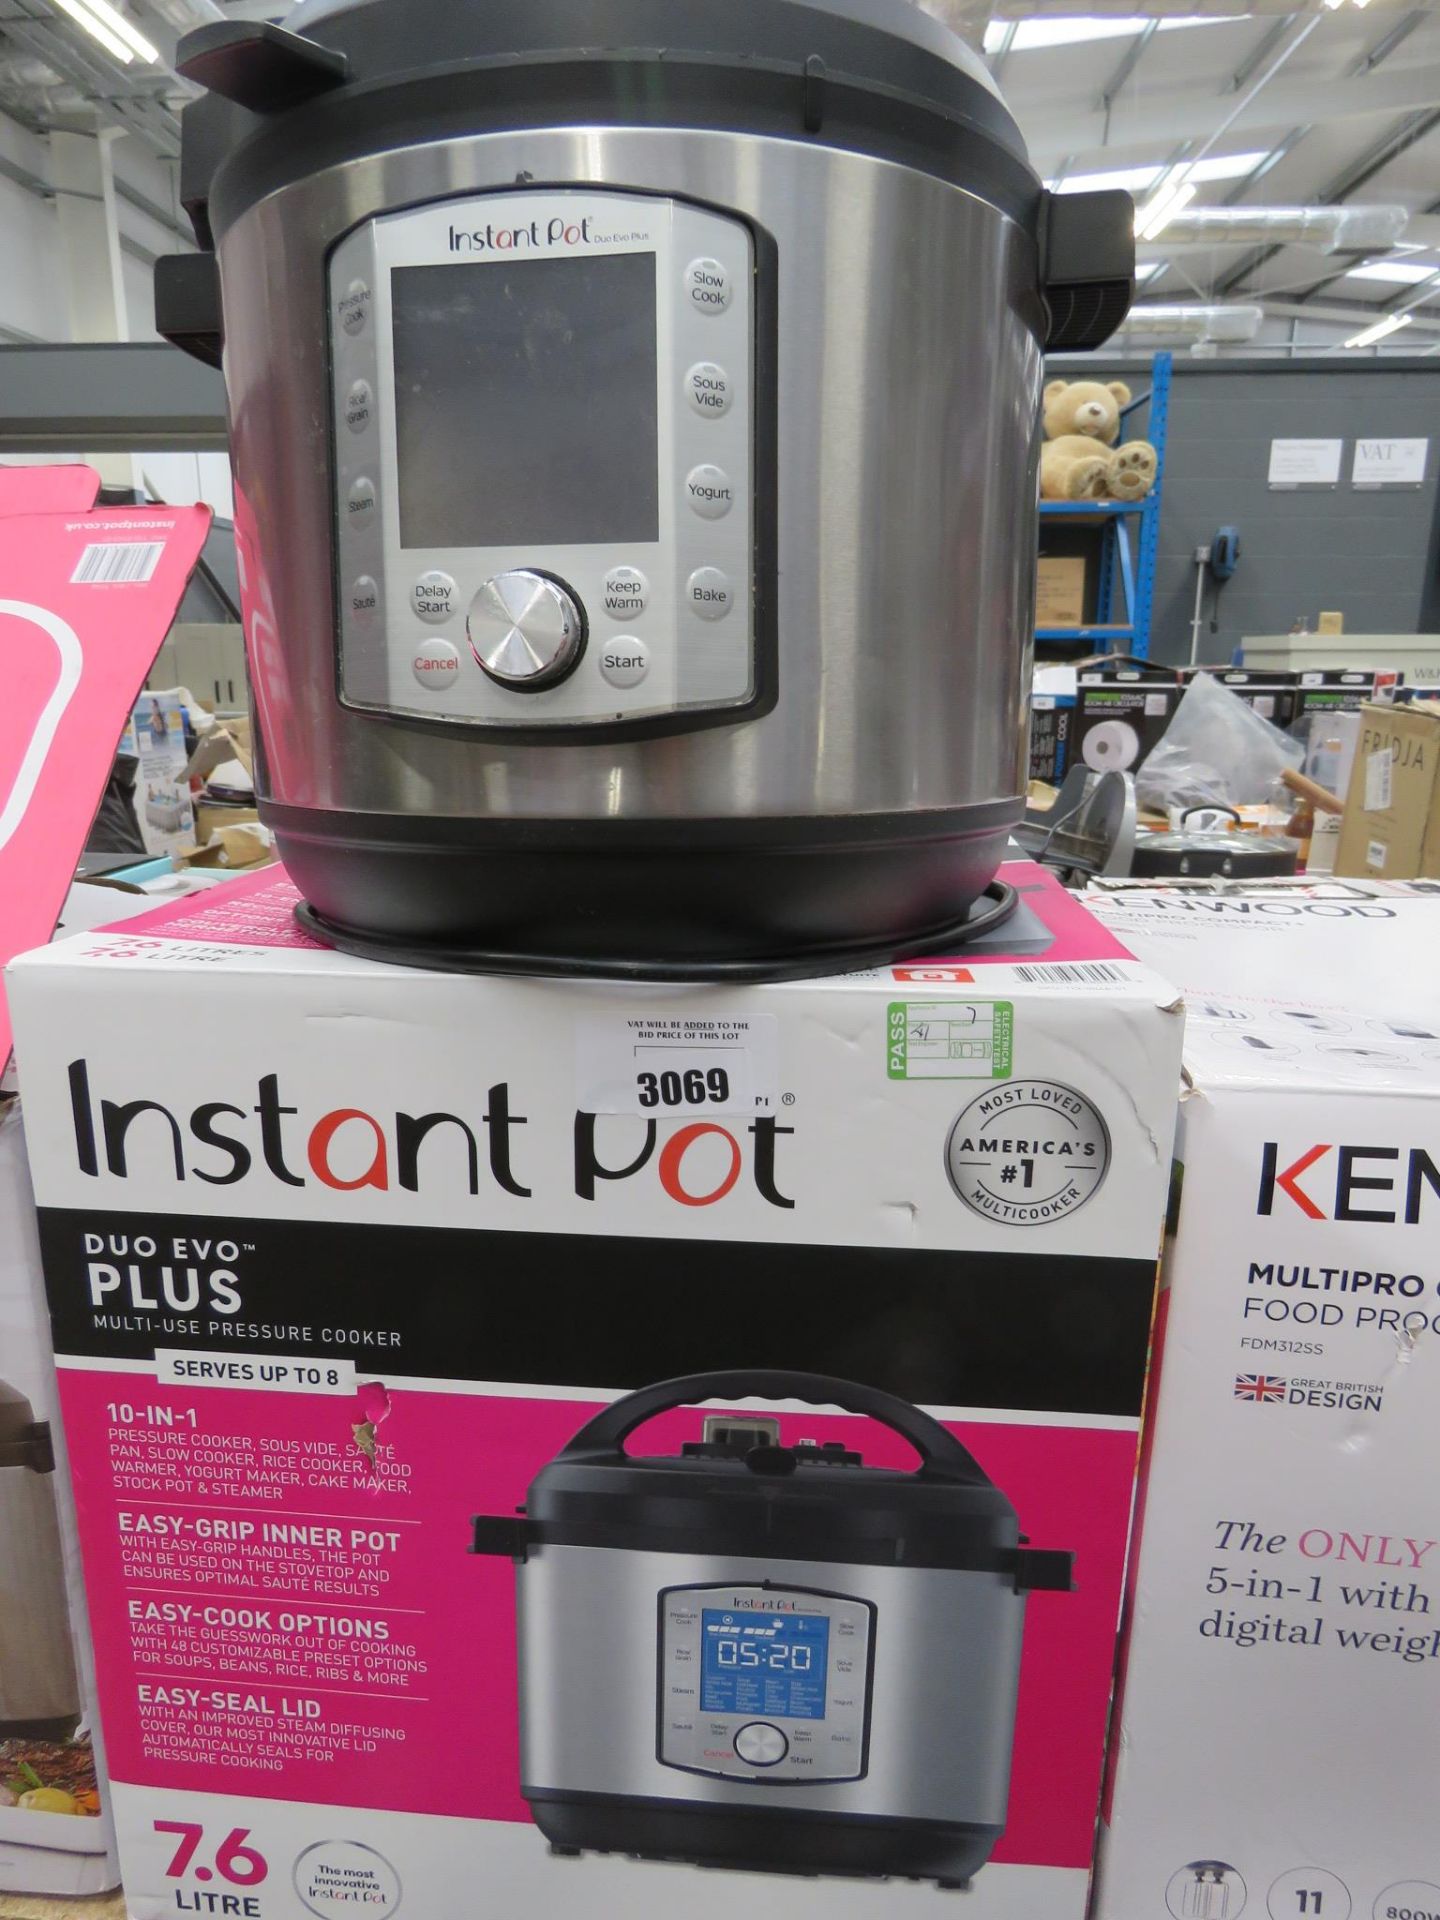 (TN7) Instant pot duo plus multi use pressure cooker